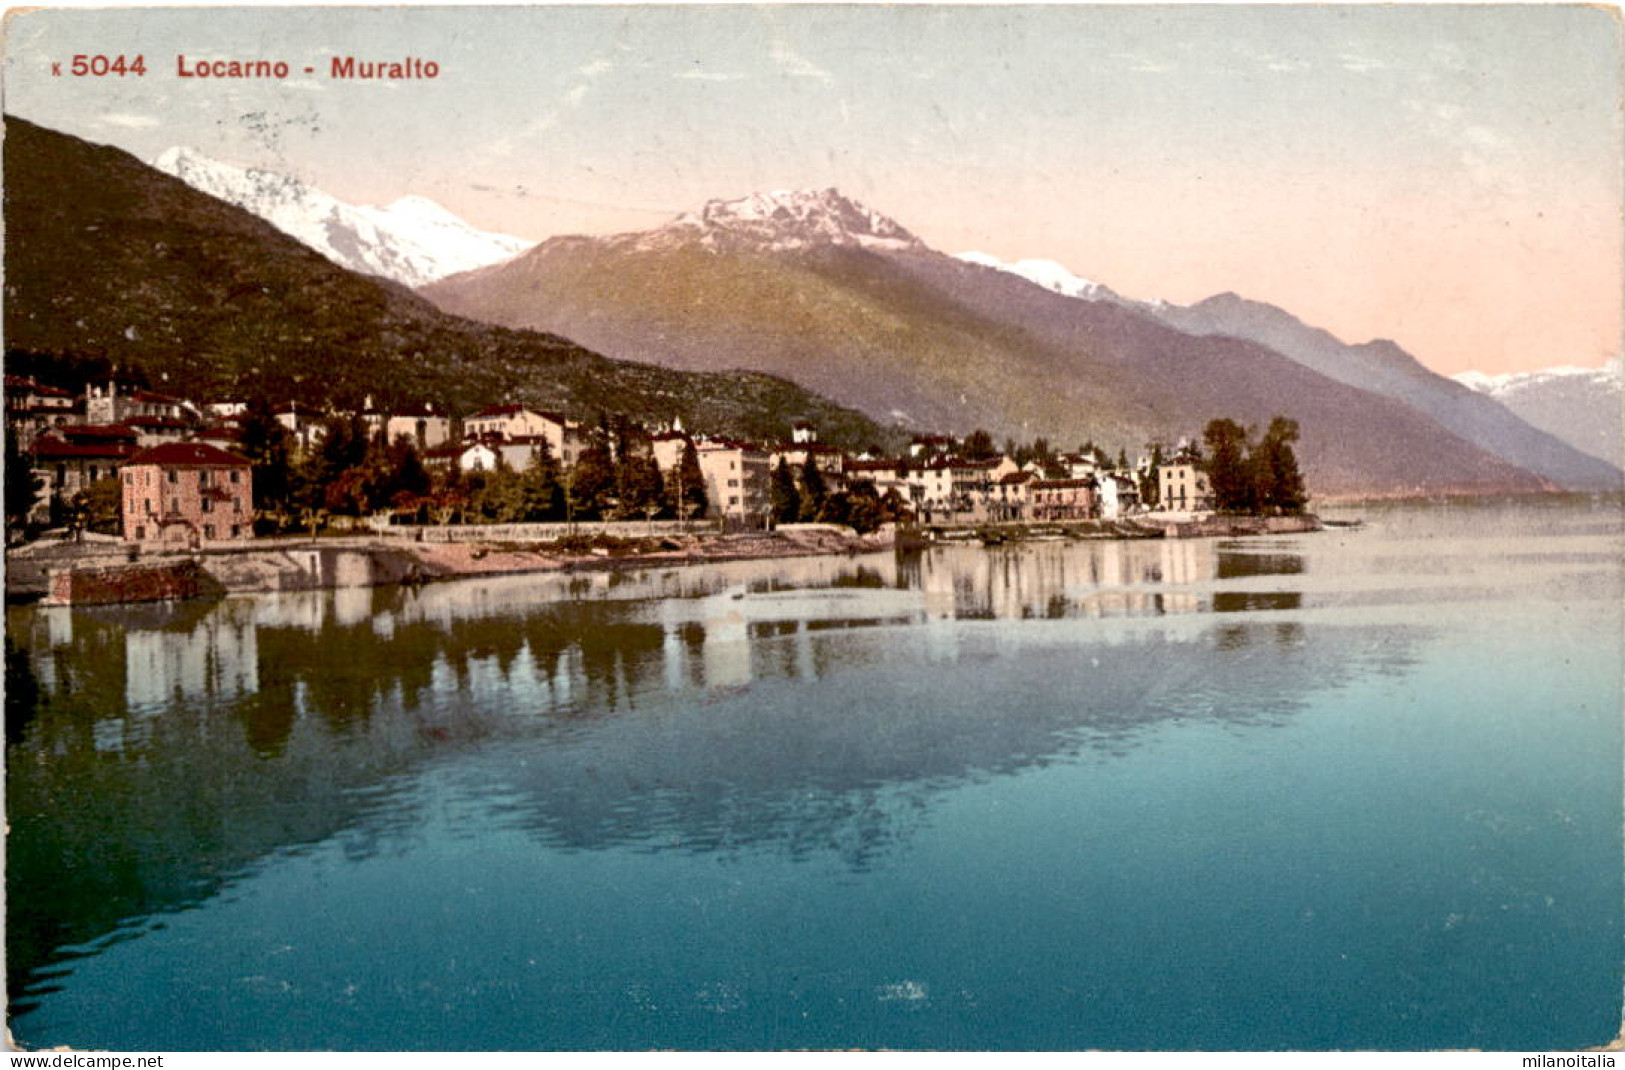 Locarno - Muralto (5044) * 5. 6. 1911 - Muralto